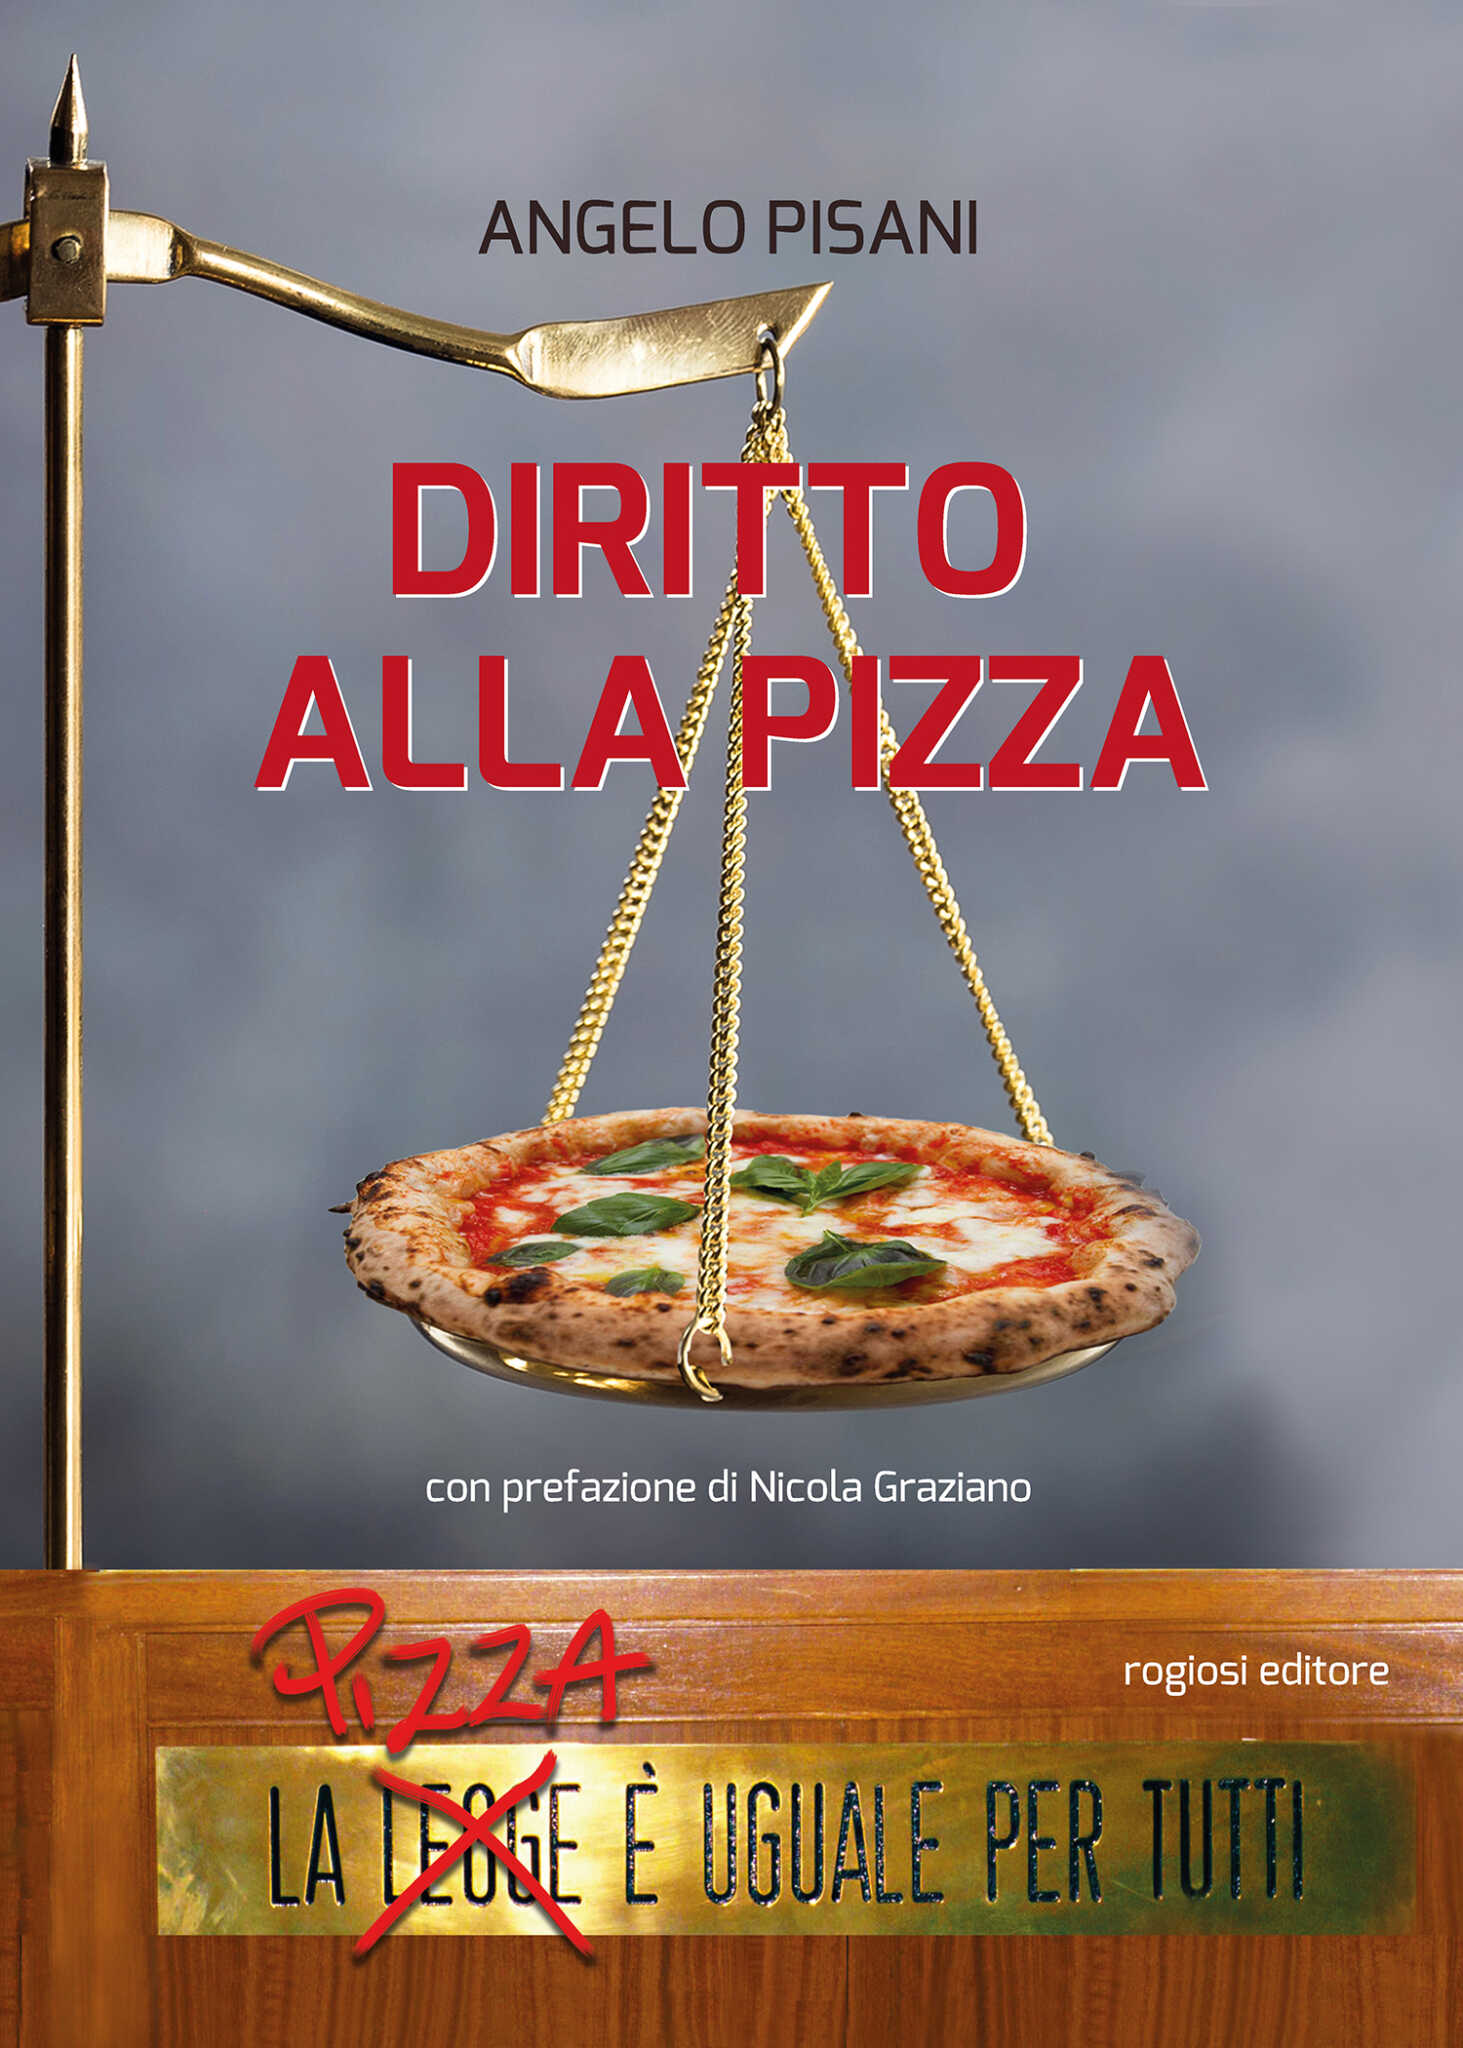 ‘Diritto alla pizza’ di Angelo Pisani per Rogiosi Editore al Teatro Jovinelli di Caiazzo